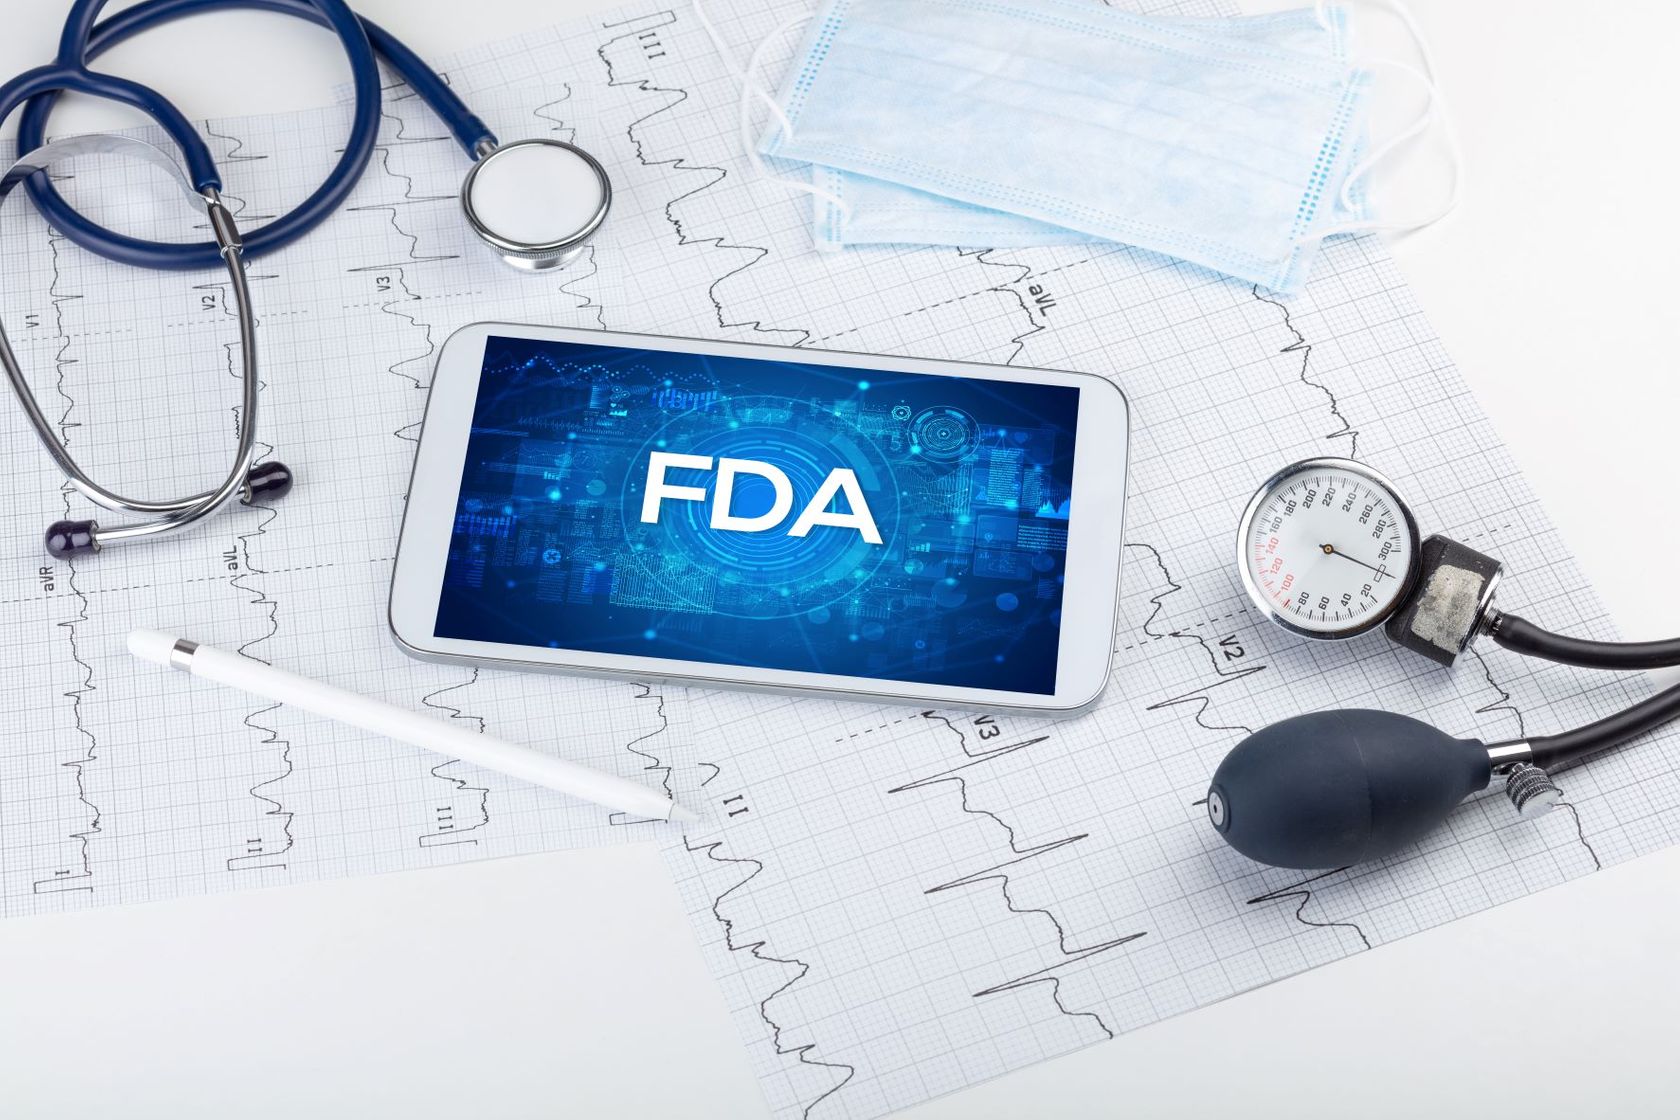 FDA auf dem Smartphone mit Stethoskop und Blutdruckmesser